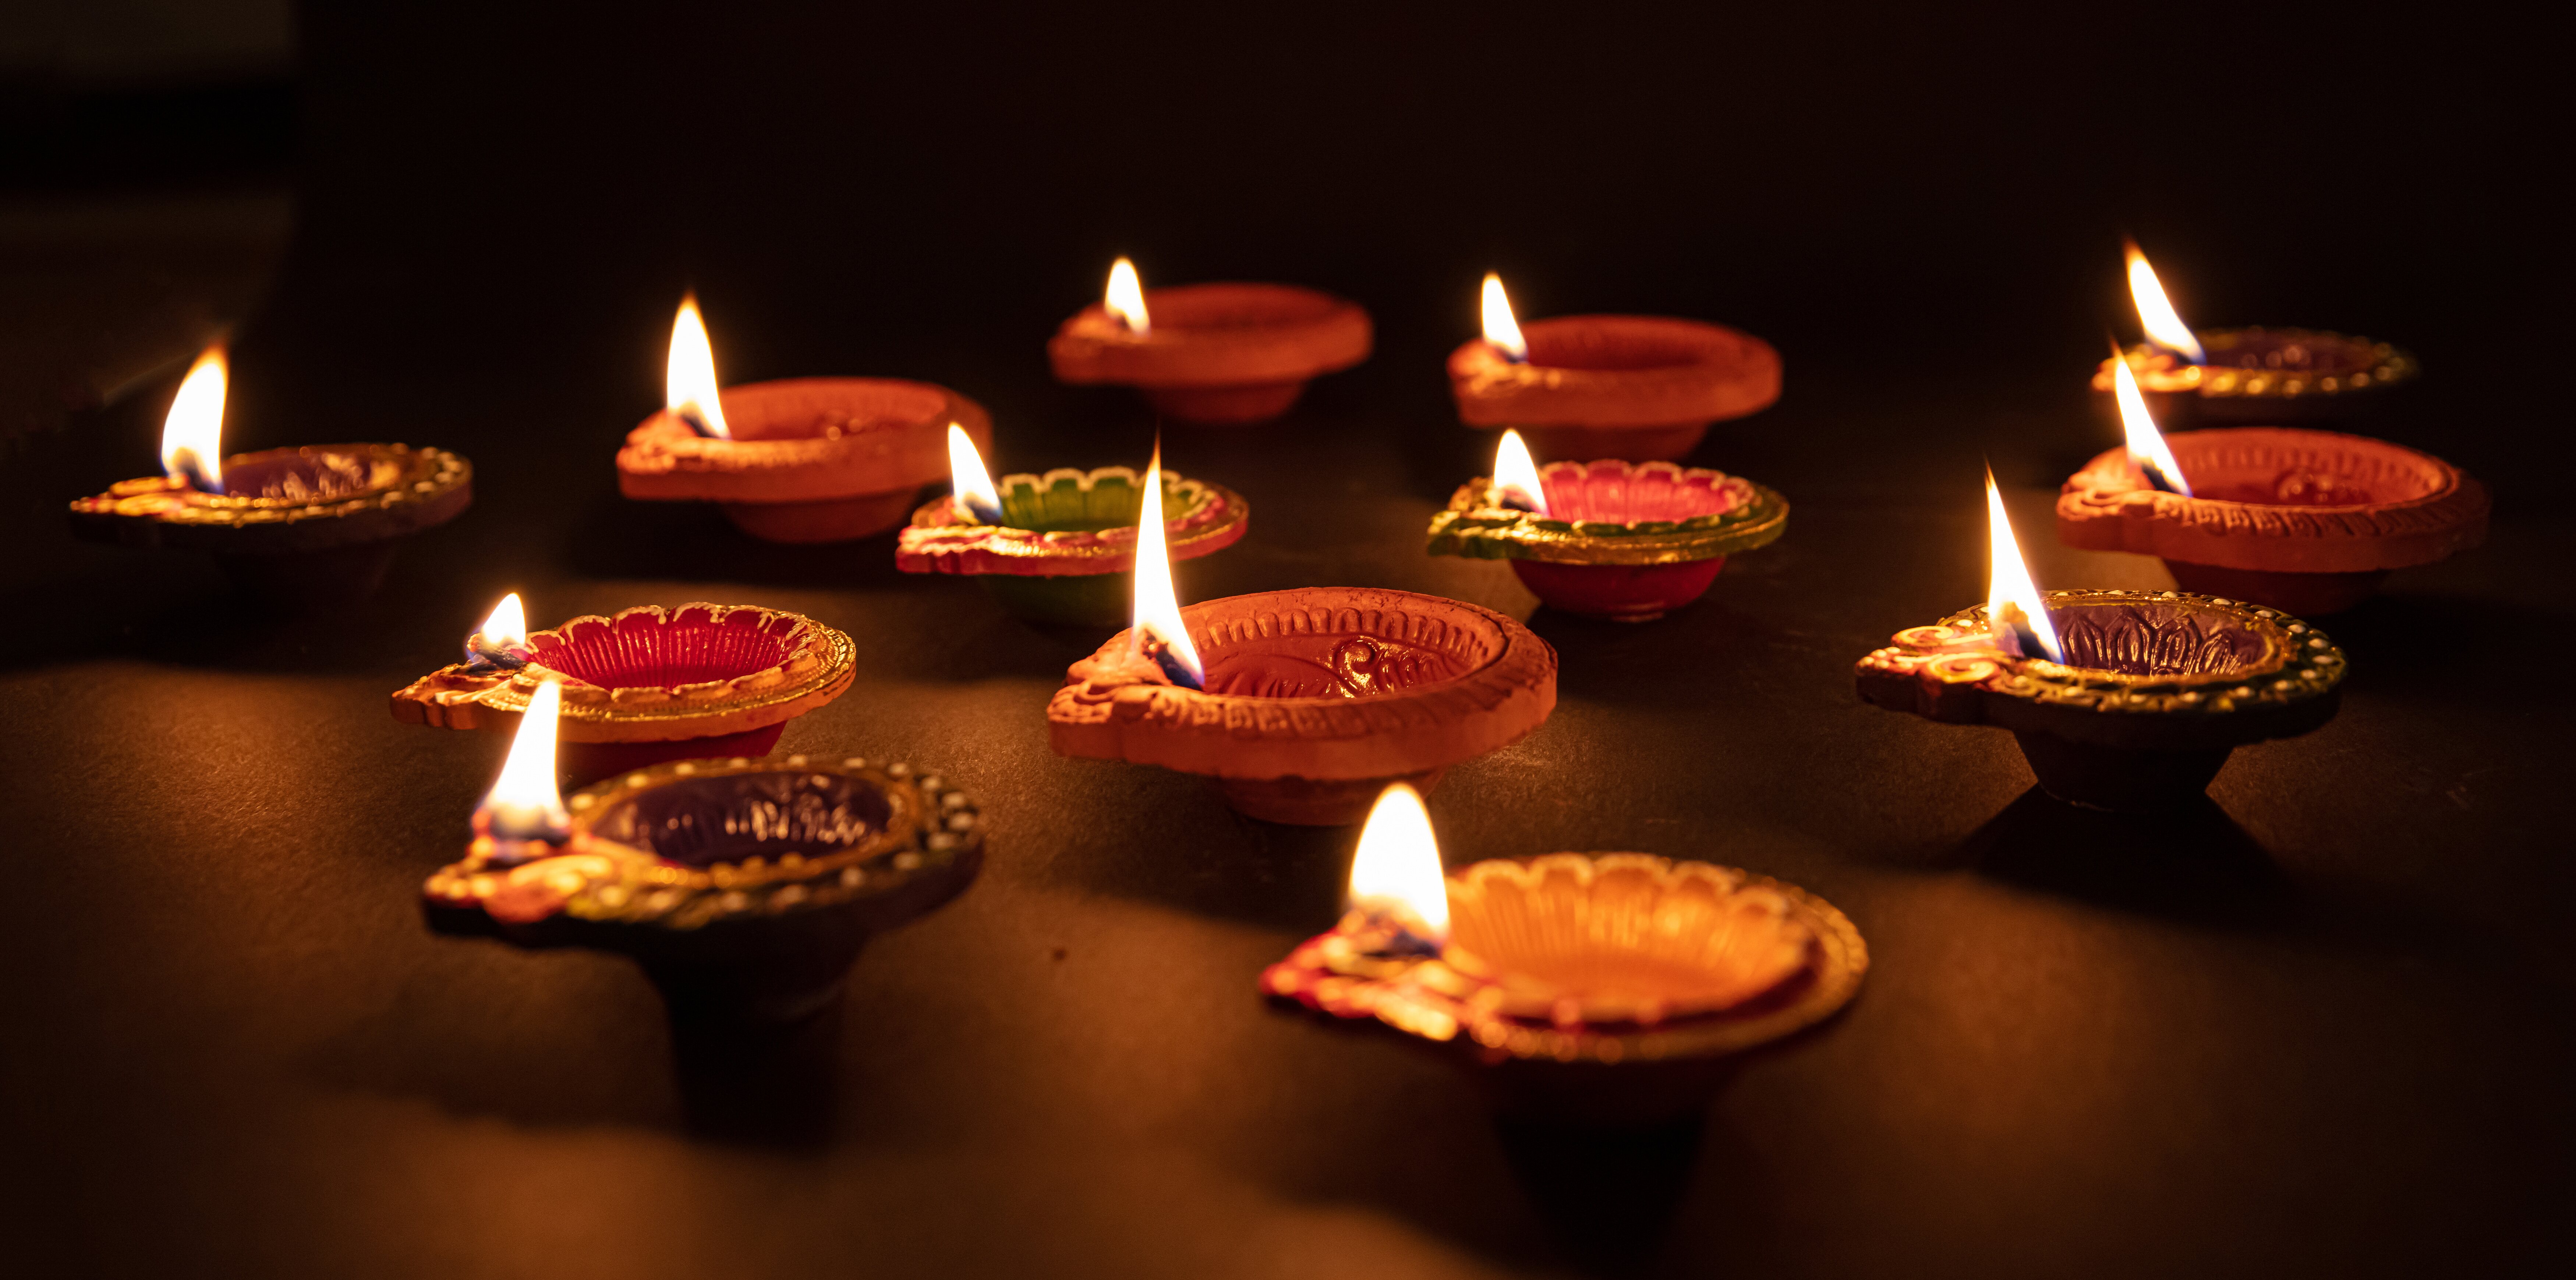 Las velas cobran mucho significado en este tipo de decoraciones espirituales